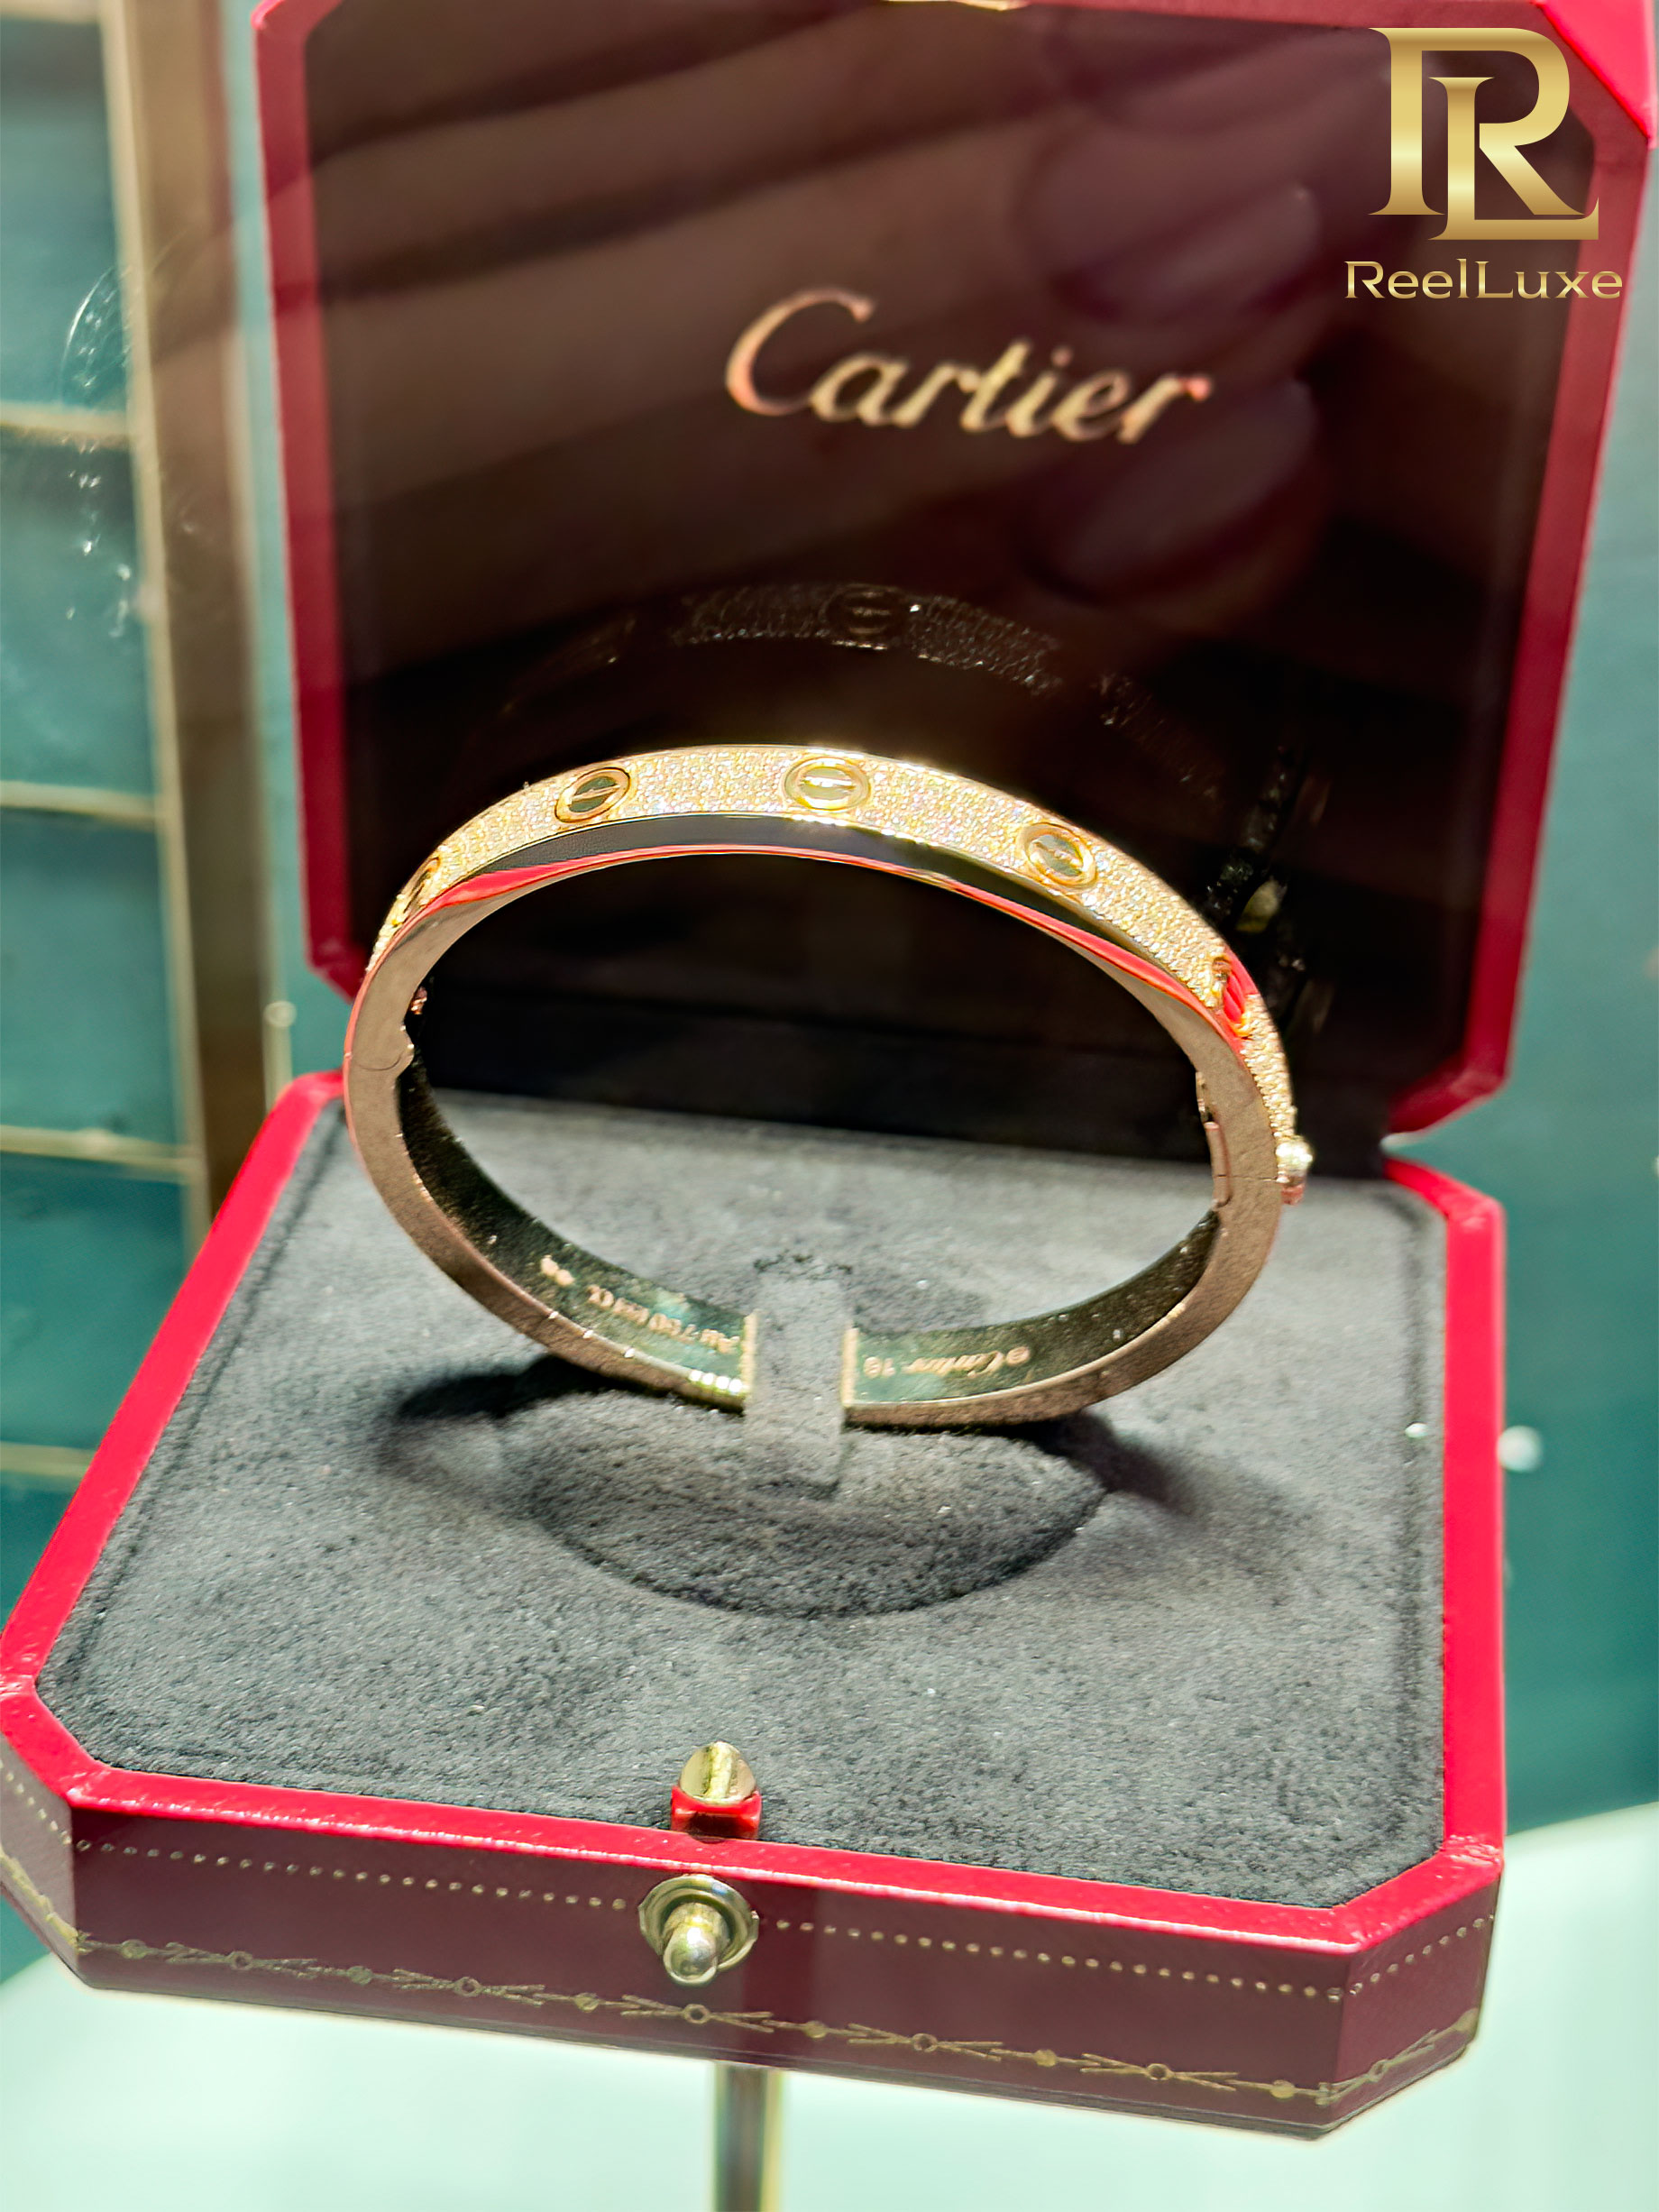 Bracelet LOVE Cartier pavé de diamants, or jaune 18 carats – Boutique Cartier Firenze – Florence, Italie – 2